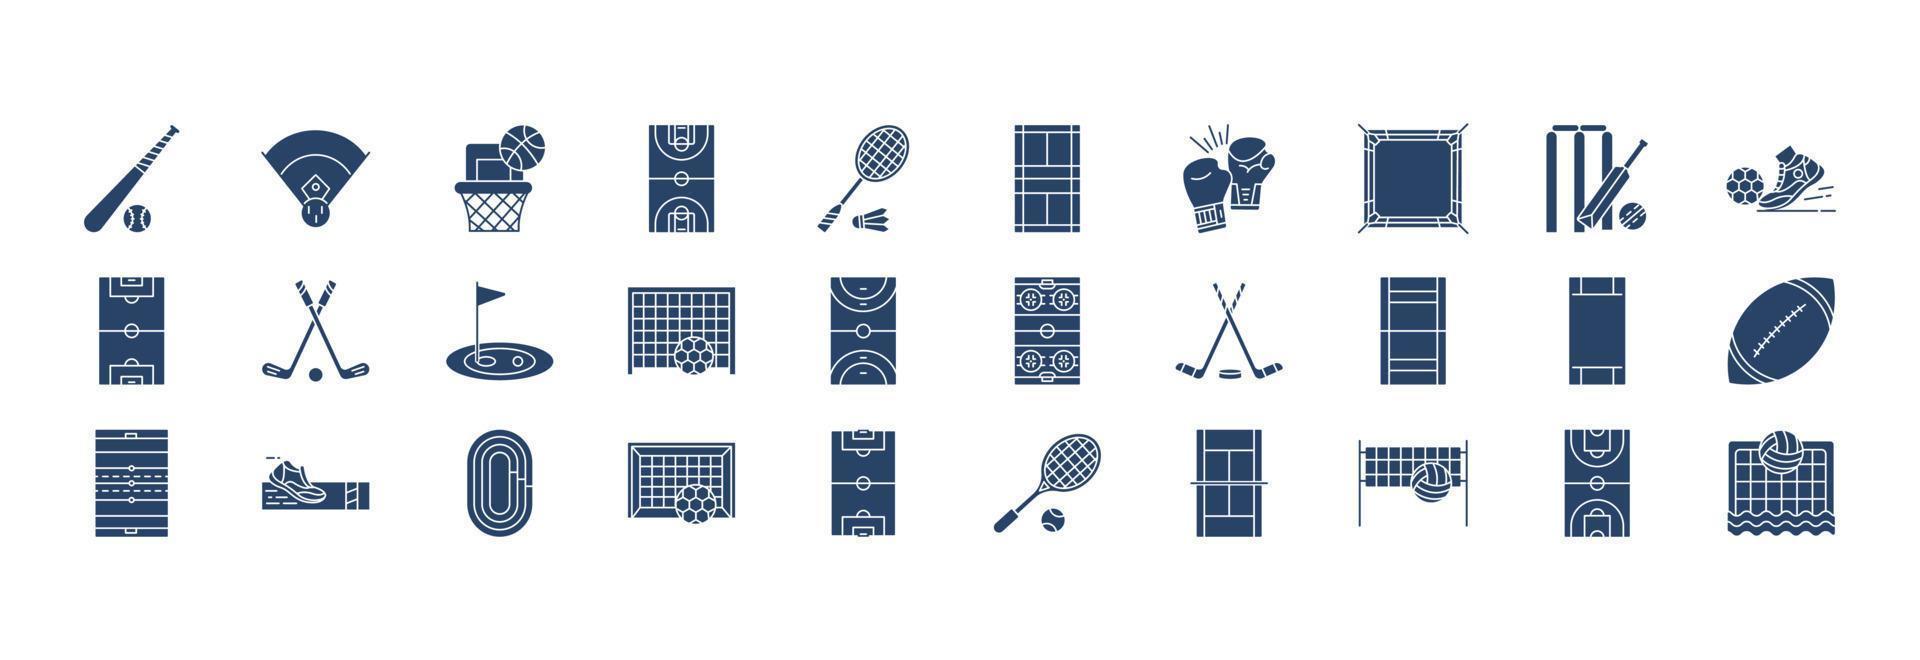 verzameling van pictogrammen verwant naar stadions en spellen, inclusief pictogrammen Leuk vinden basketbal spel, basketbal, boksen, krekel en meer. vector illustraties, pixel perfect reeks